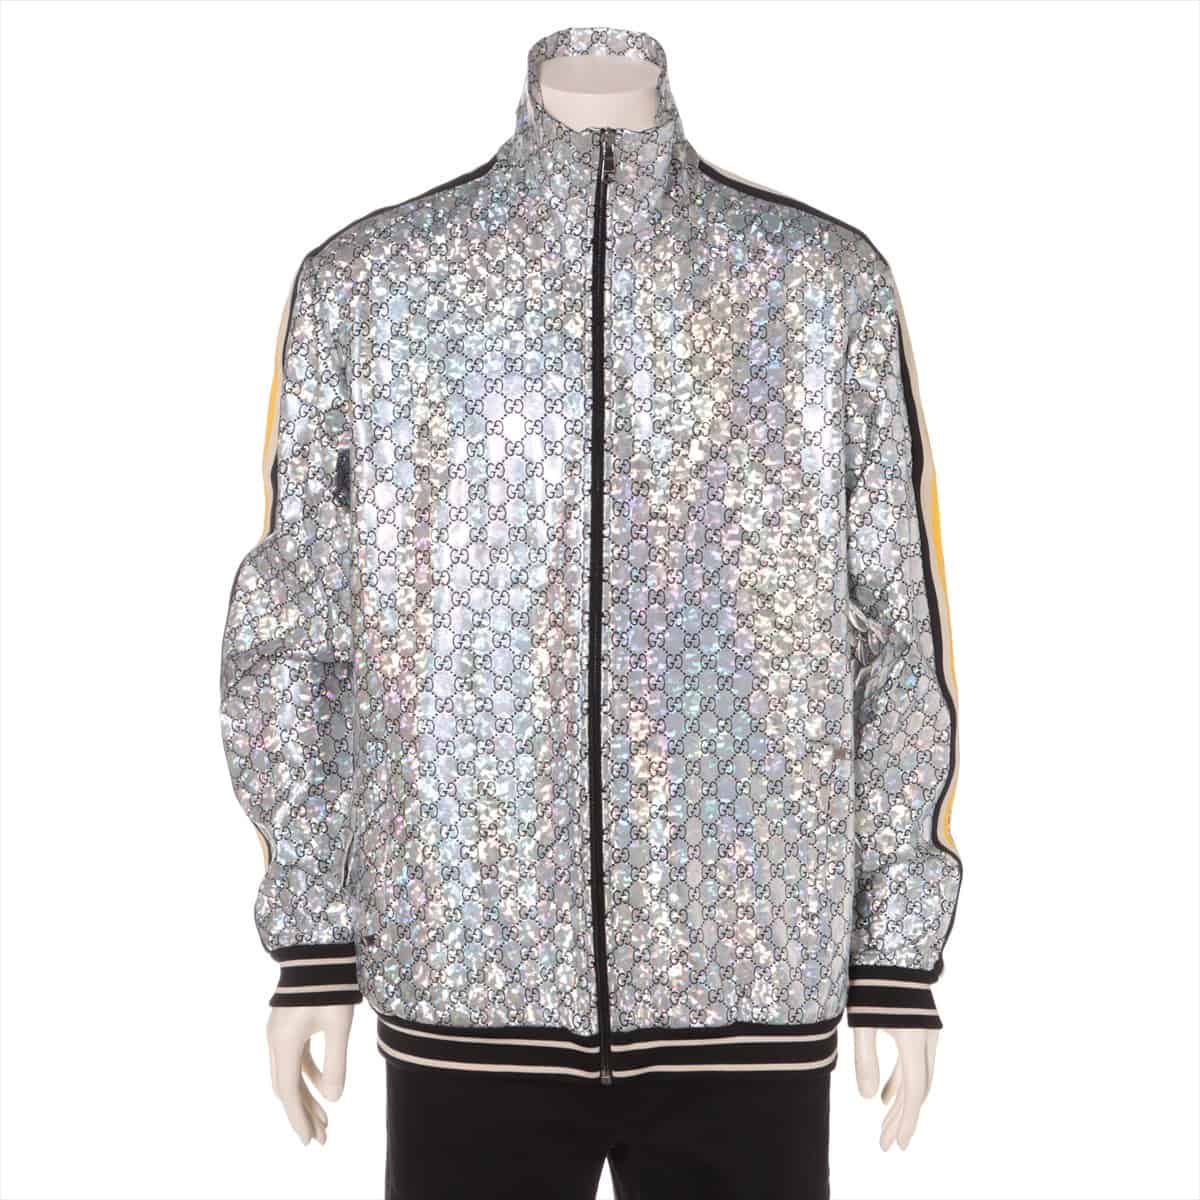 Gucci GG Nylon Sweatsuit S Men's Silver  Laminated sparkling